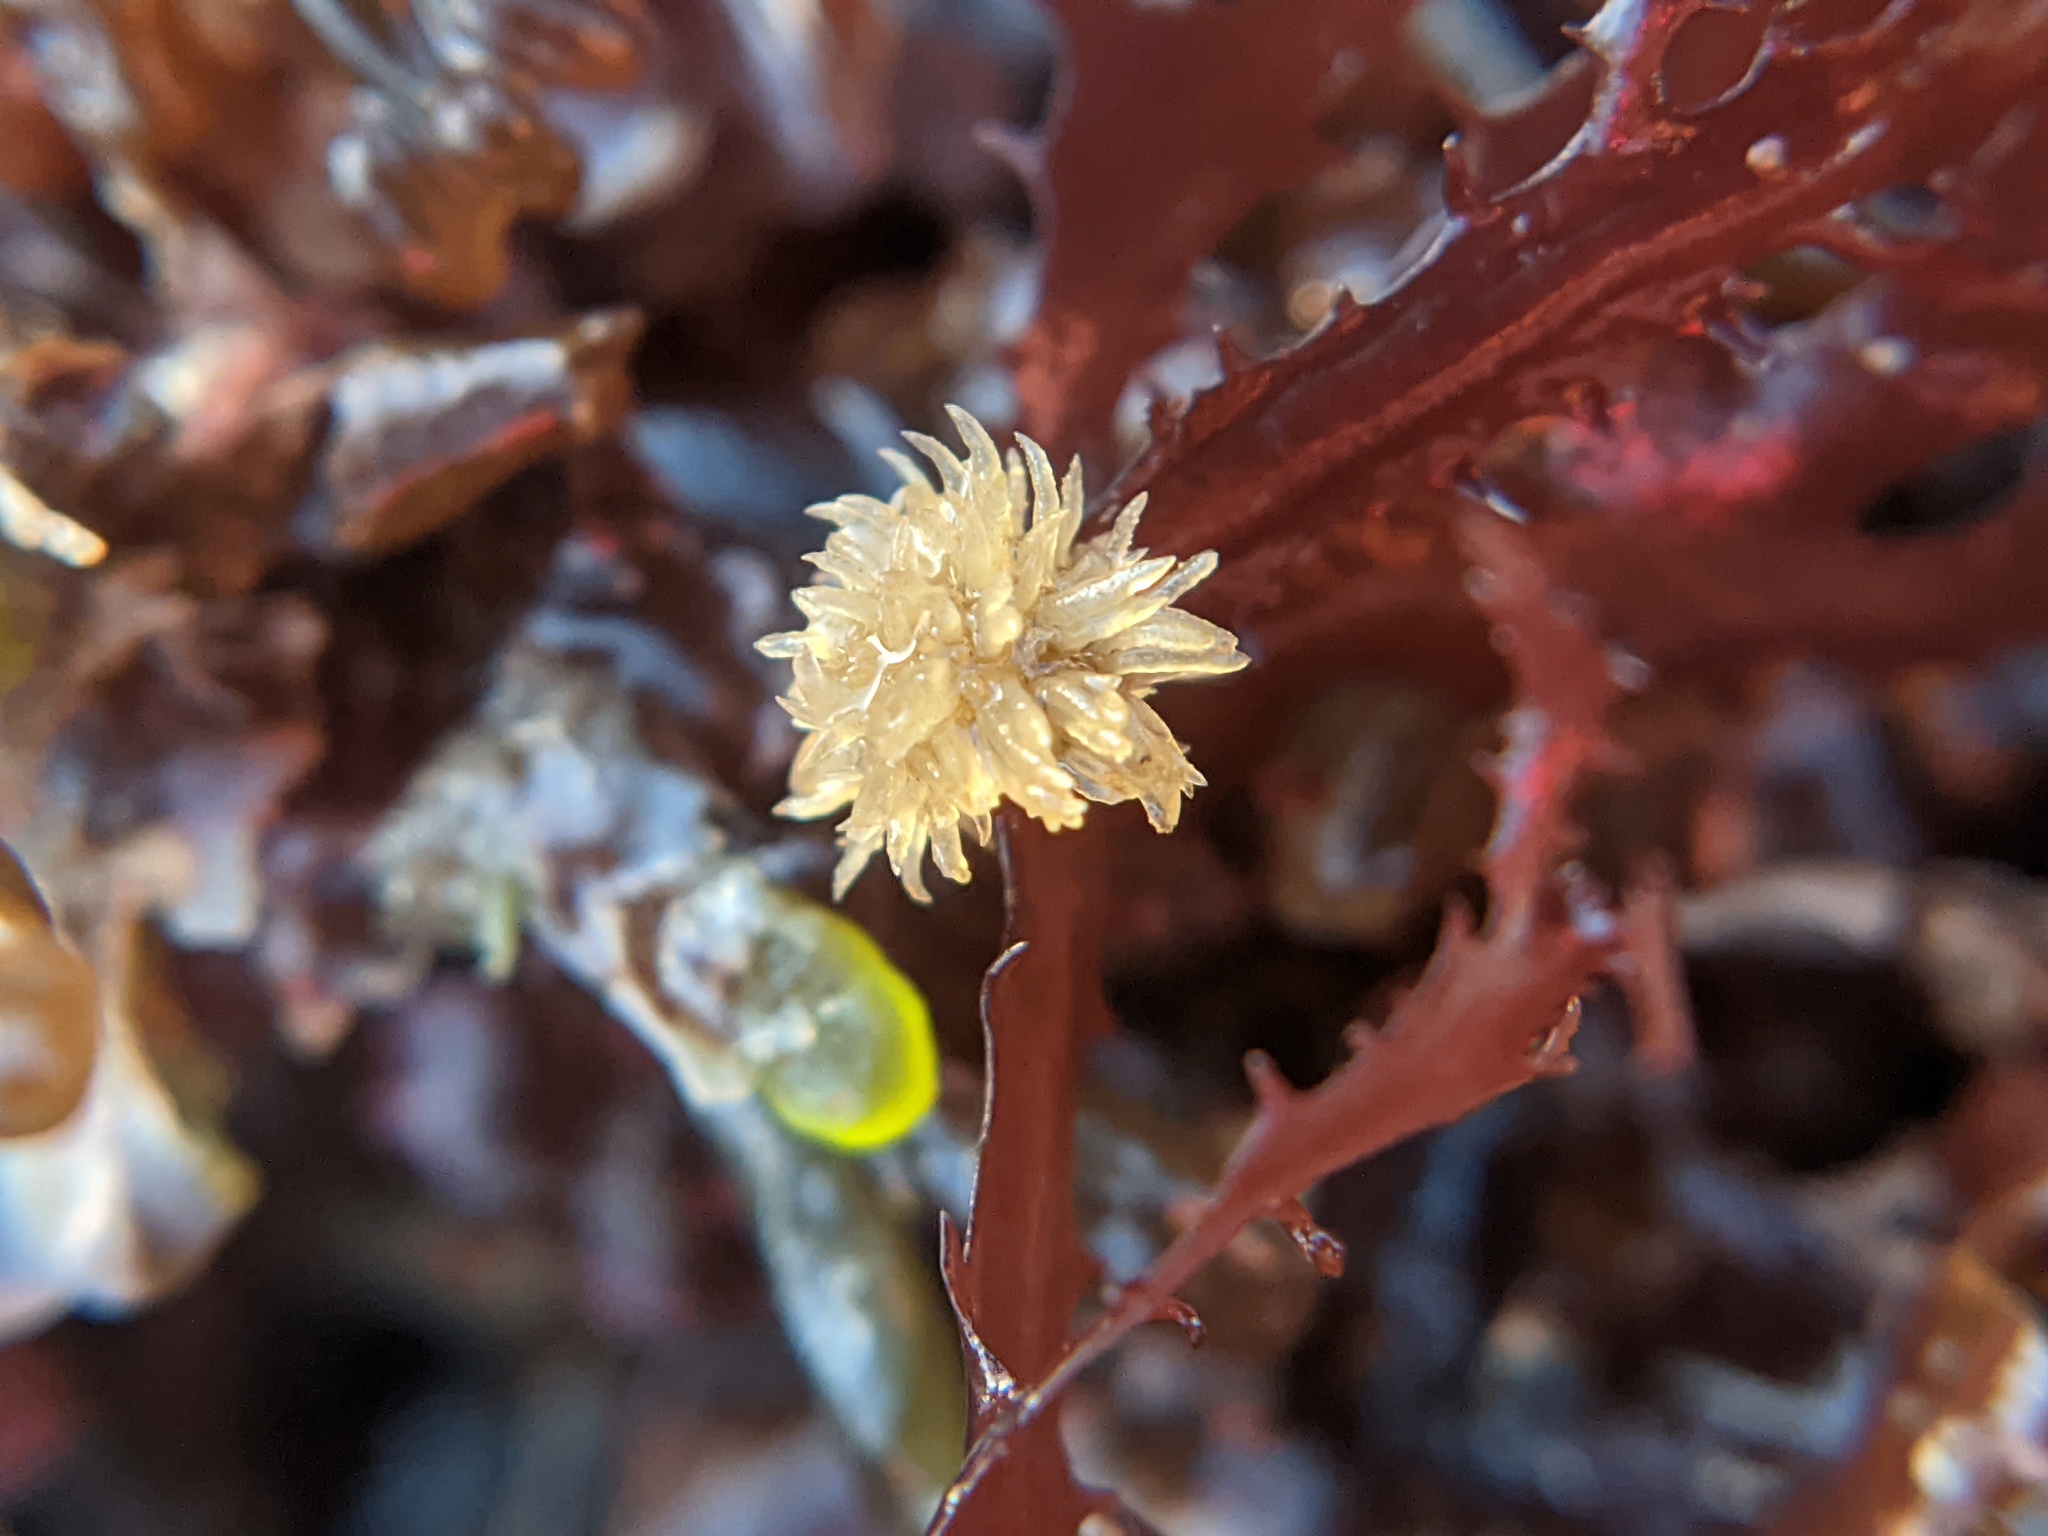 Una alga pequeña, estrellada y pálida crece unida a una alga más grande de color rojo oscuro